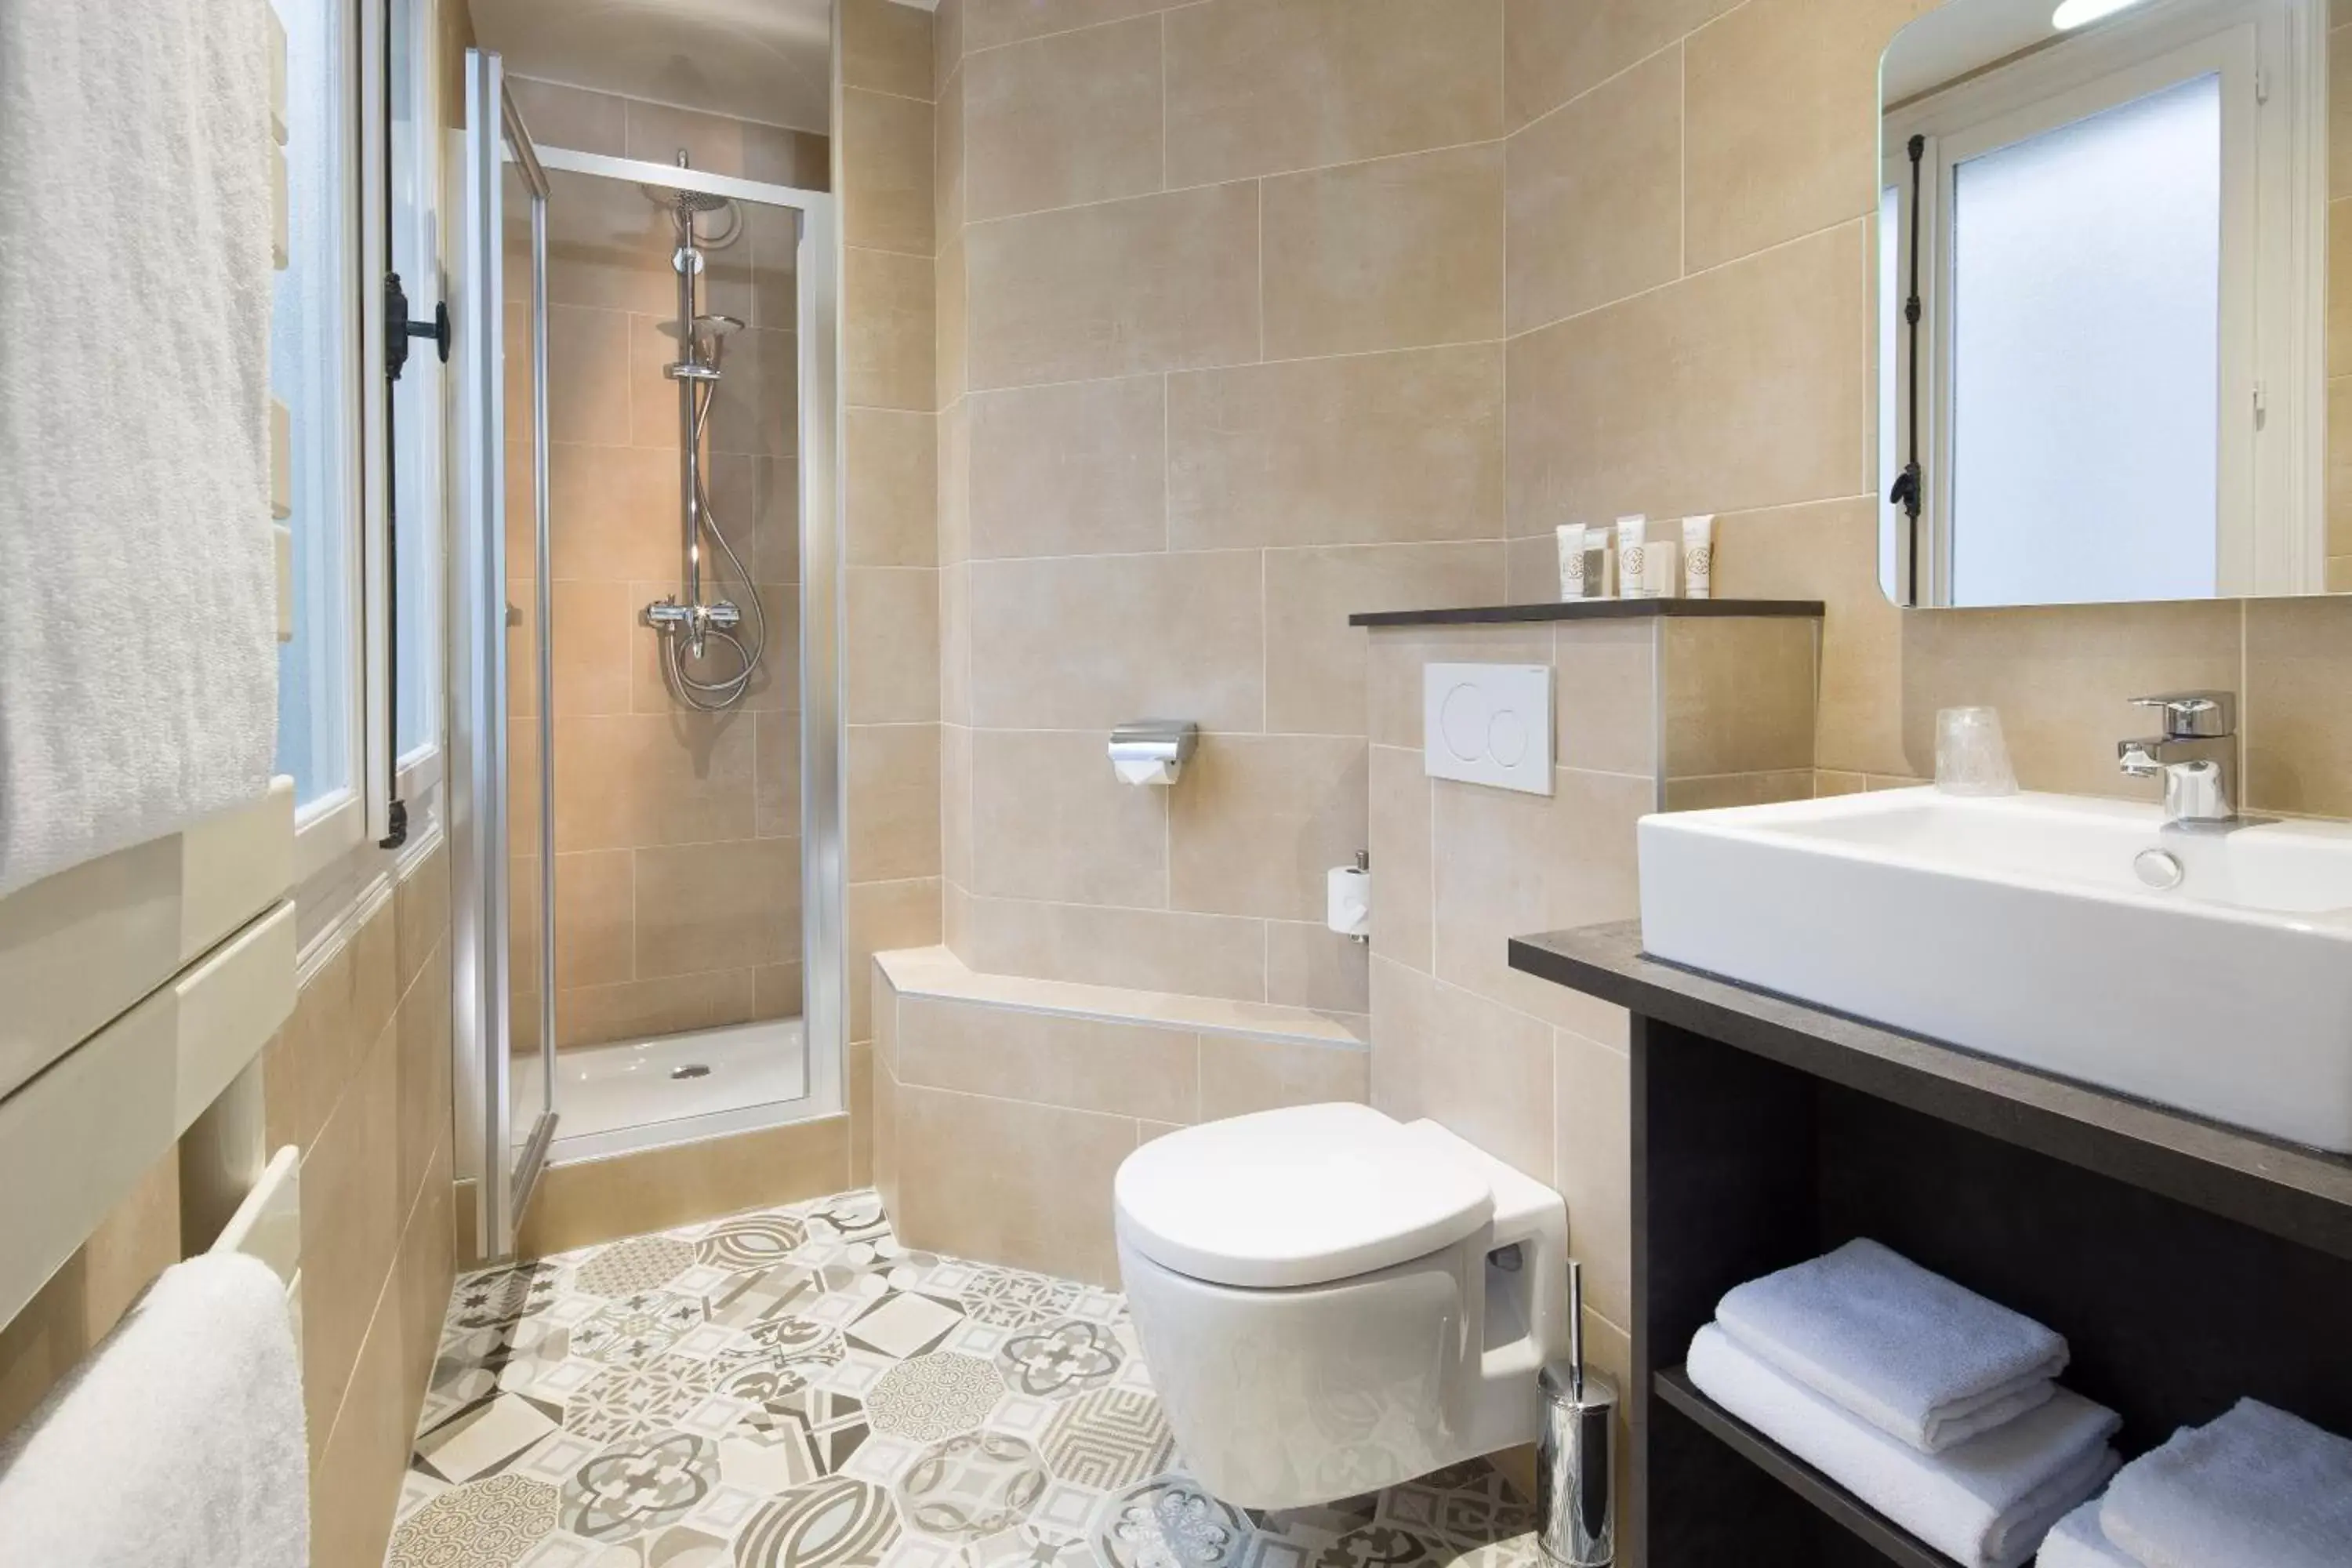 Bathroom in Hotel Vaneau Saint Germain